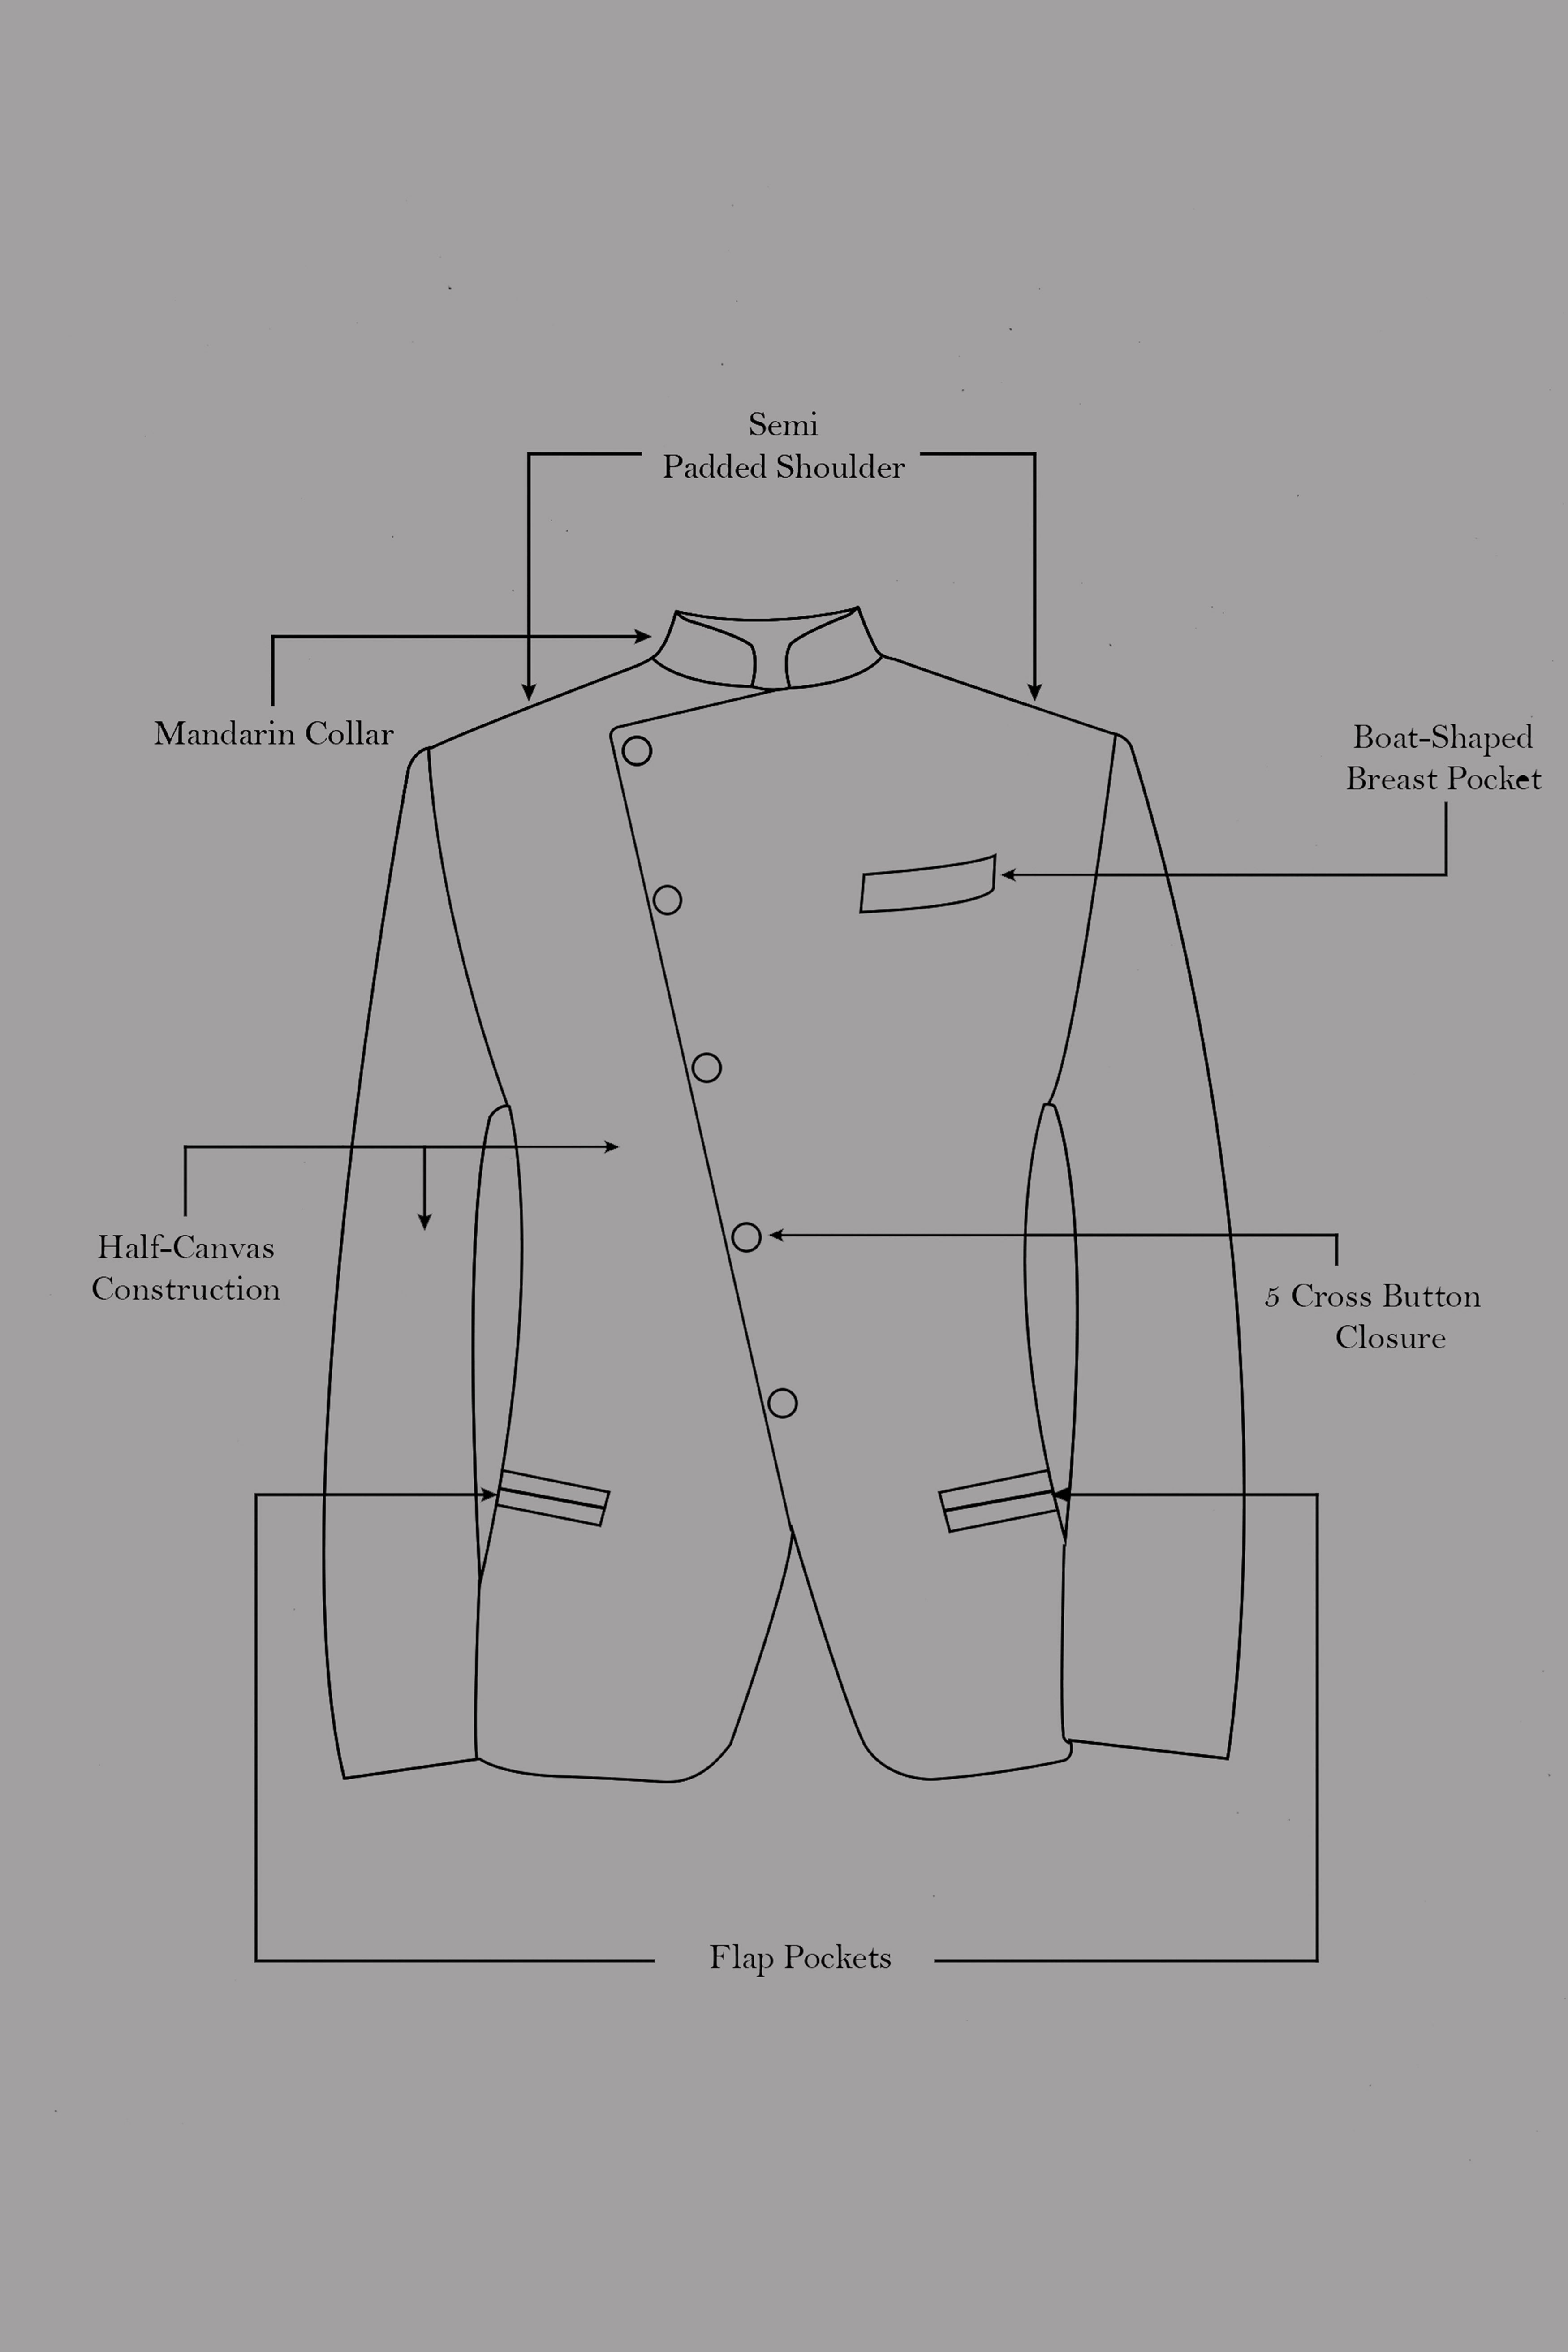 Maize Cream Cross Placket Bandhgala Premium Cotton Stretchable Traveler Suit